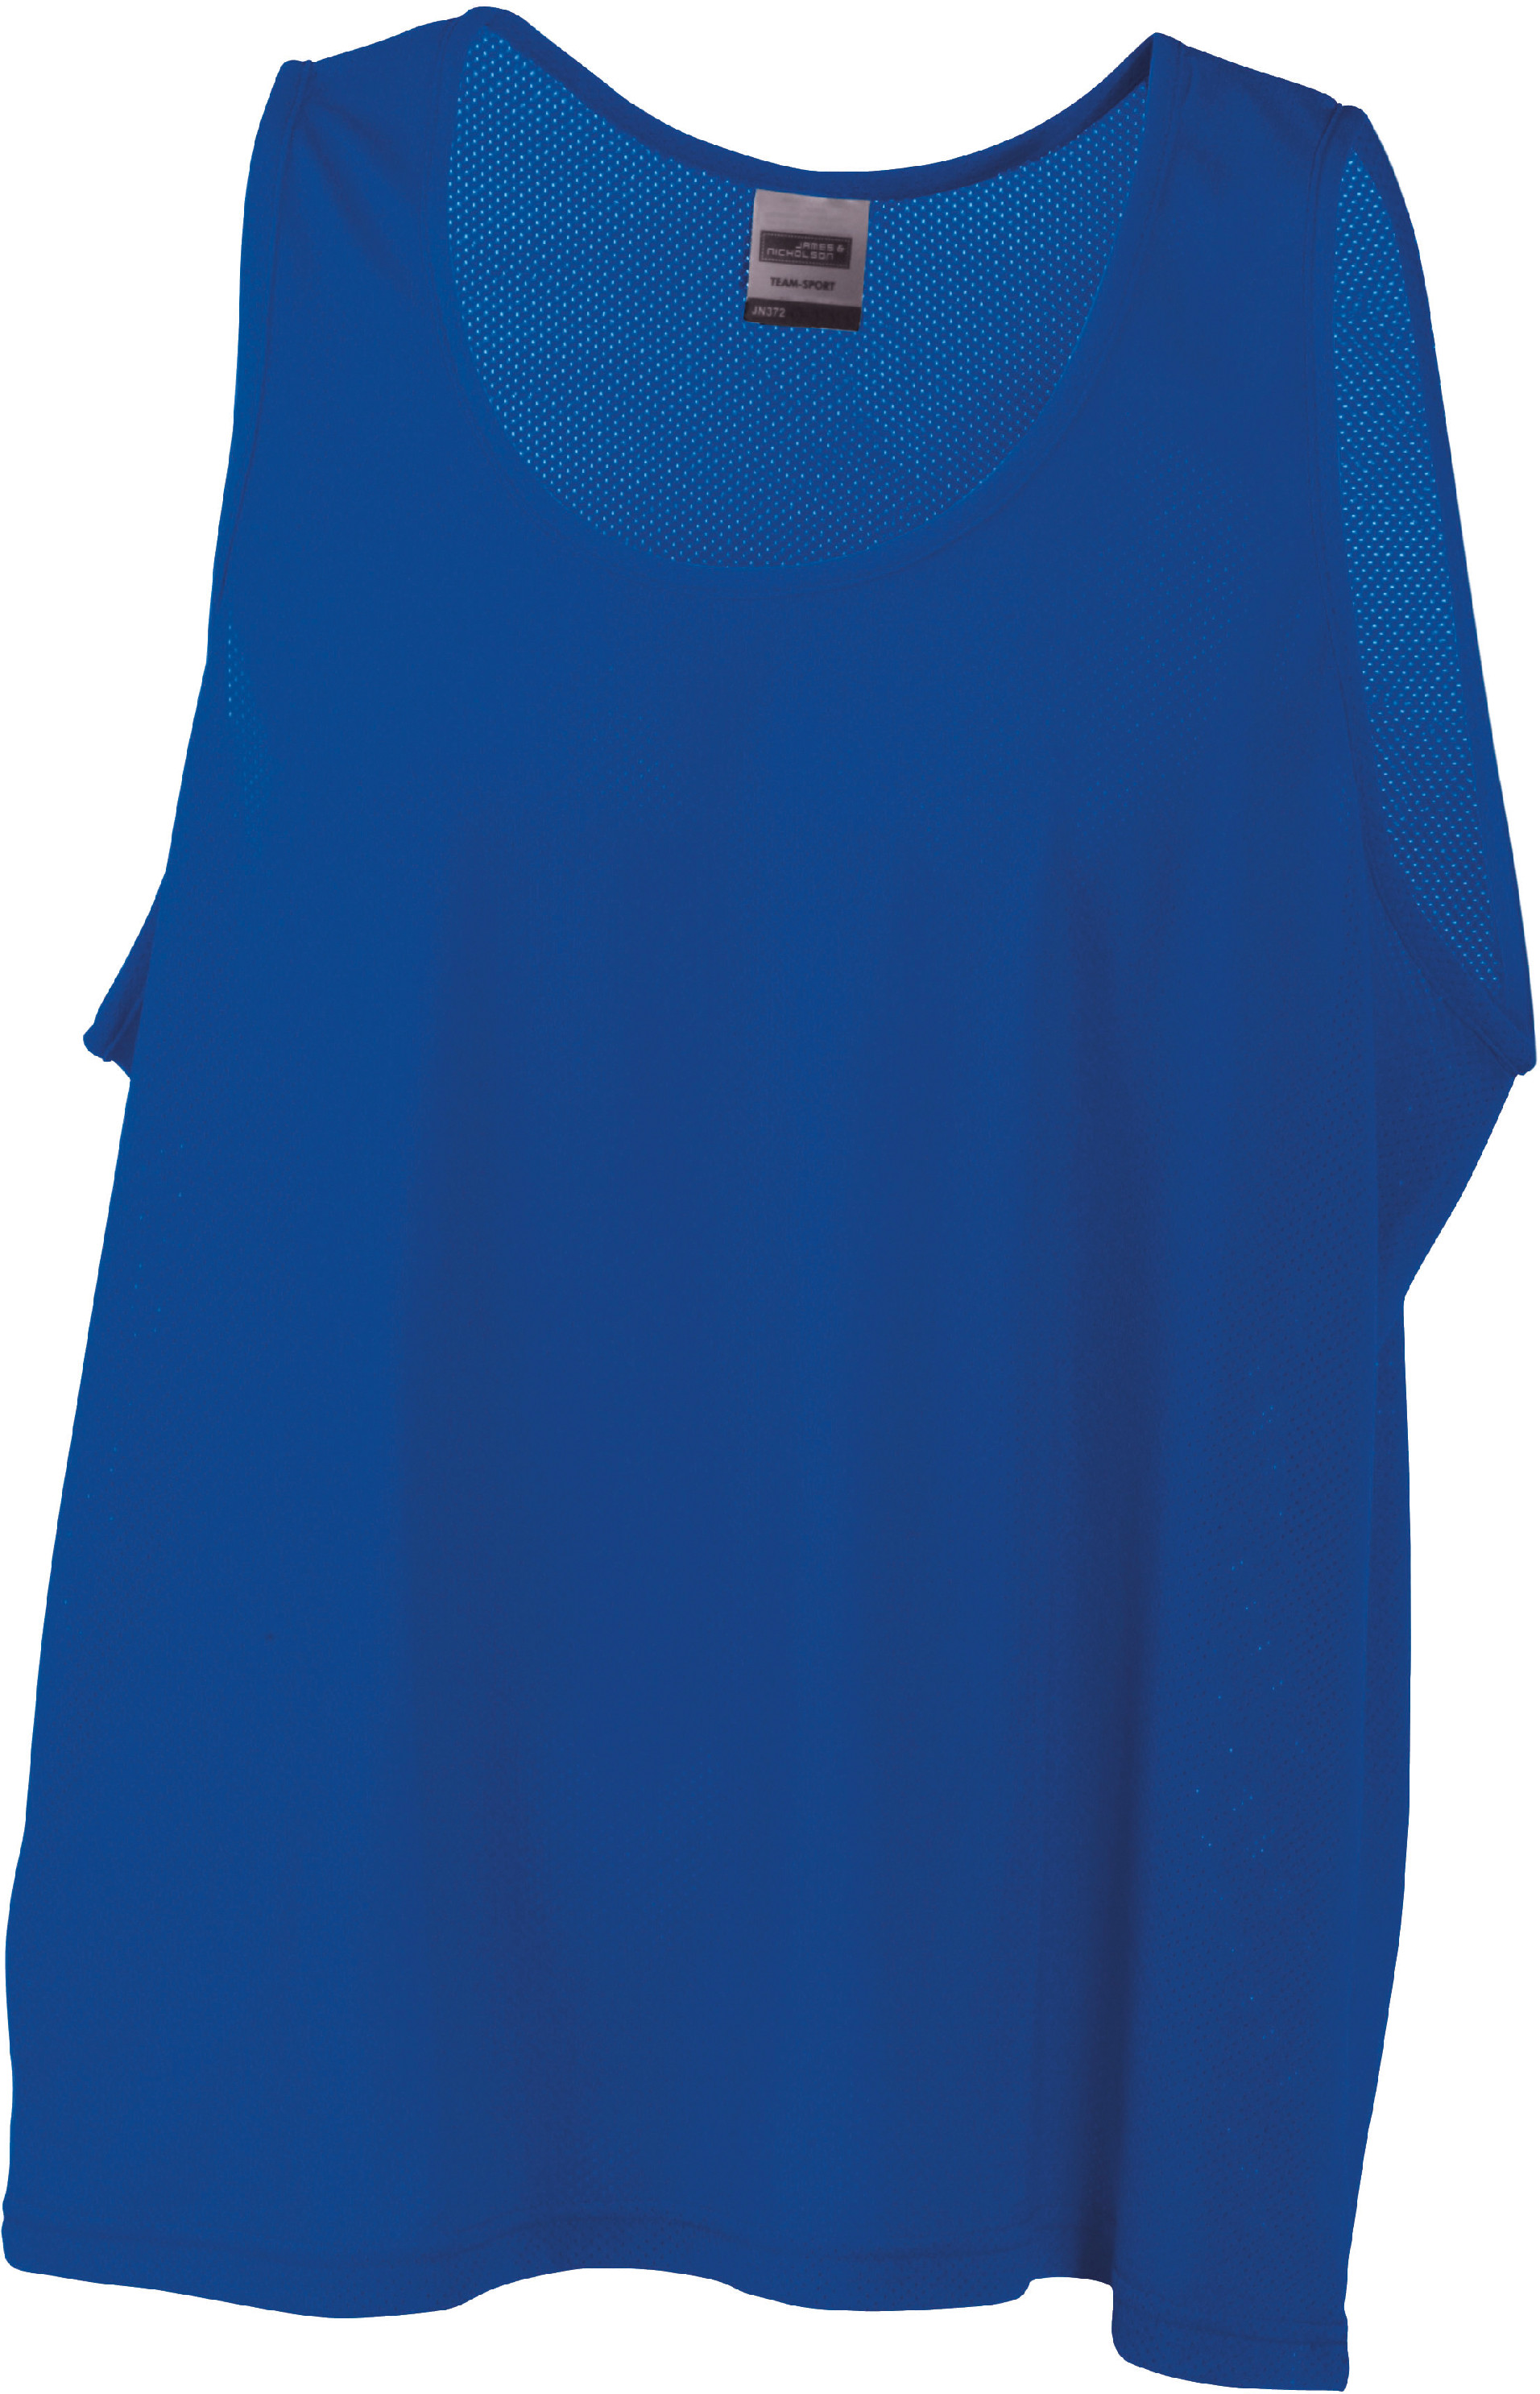 Týmový rozlišovací dres JN 372 Barva: královská modrá, Velikost: S